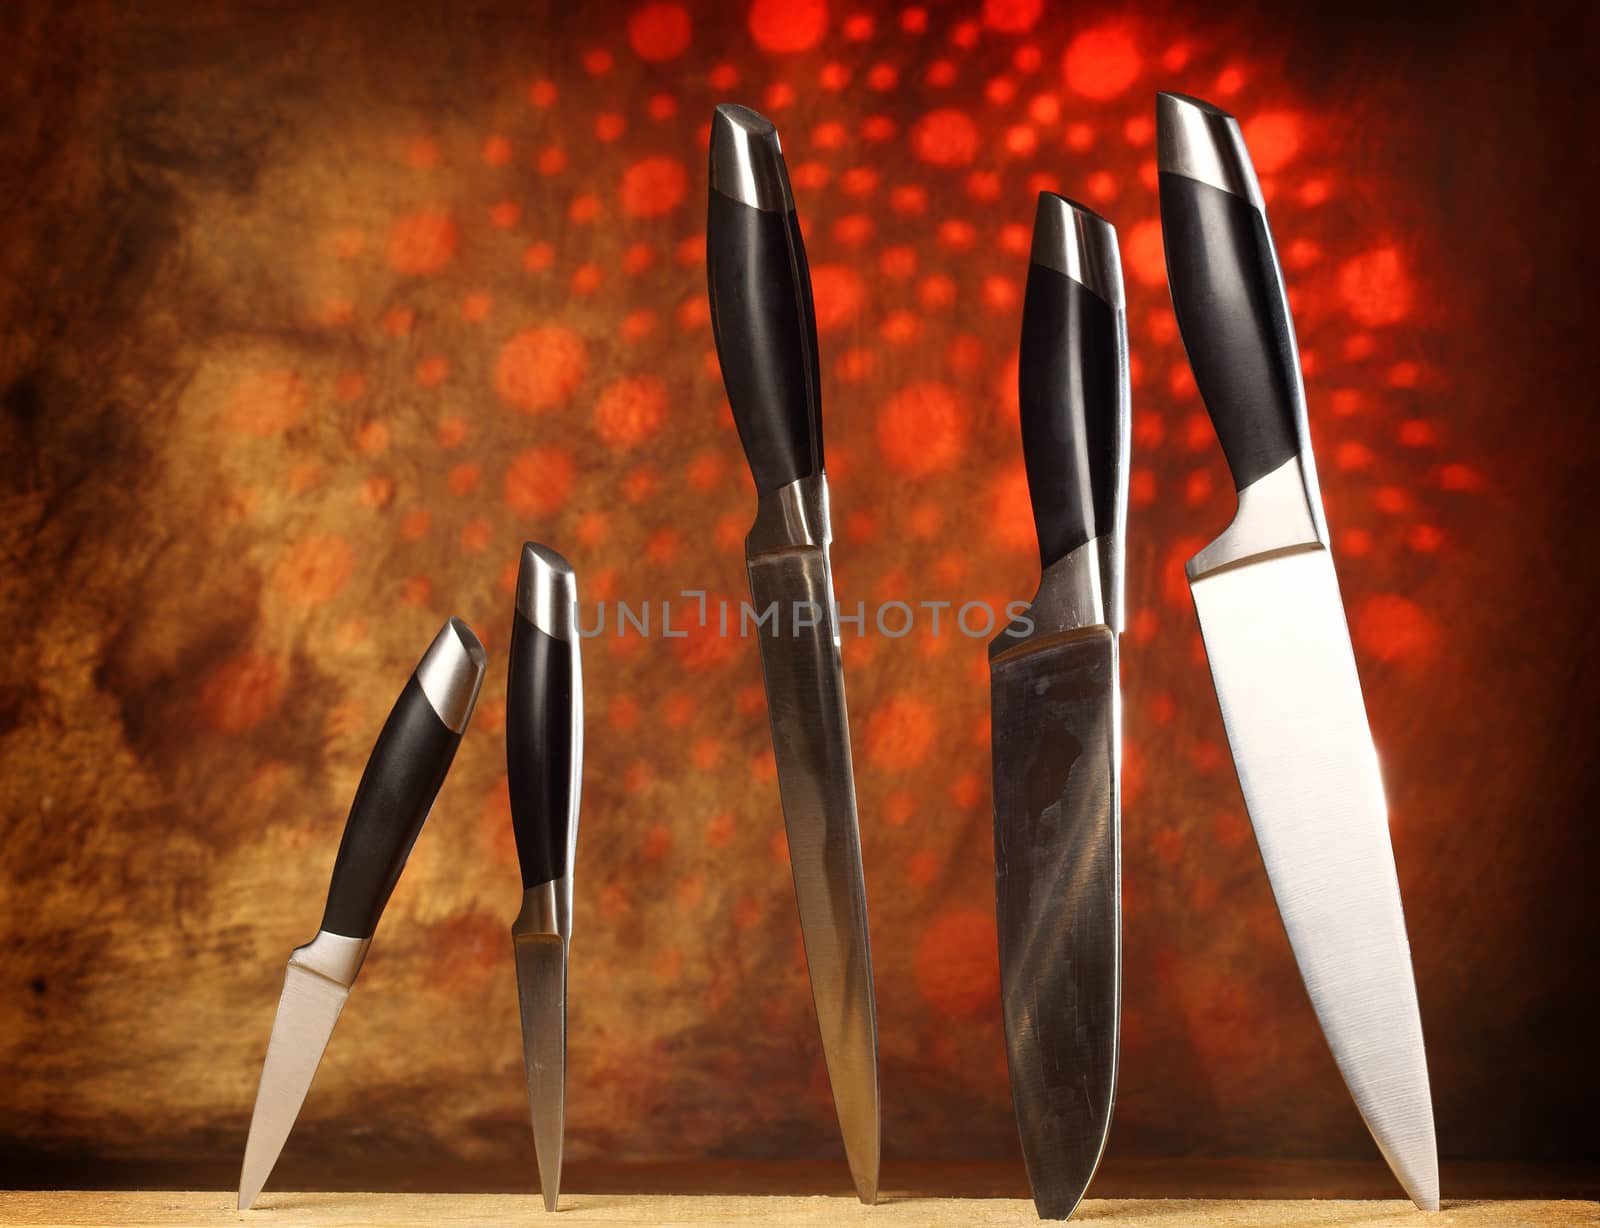  kitchen knives by alexkosev